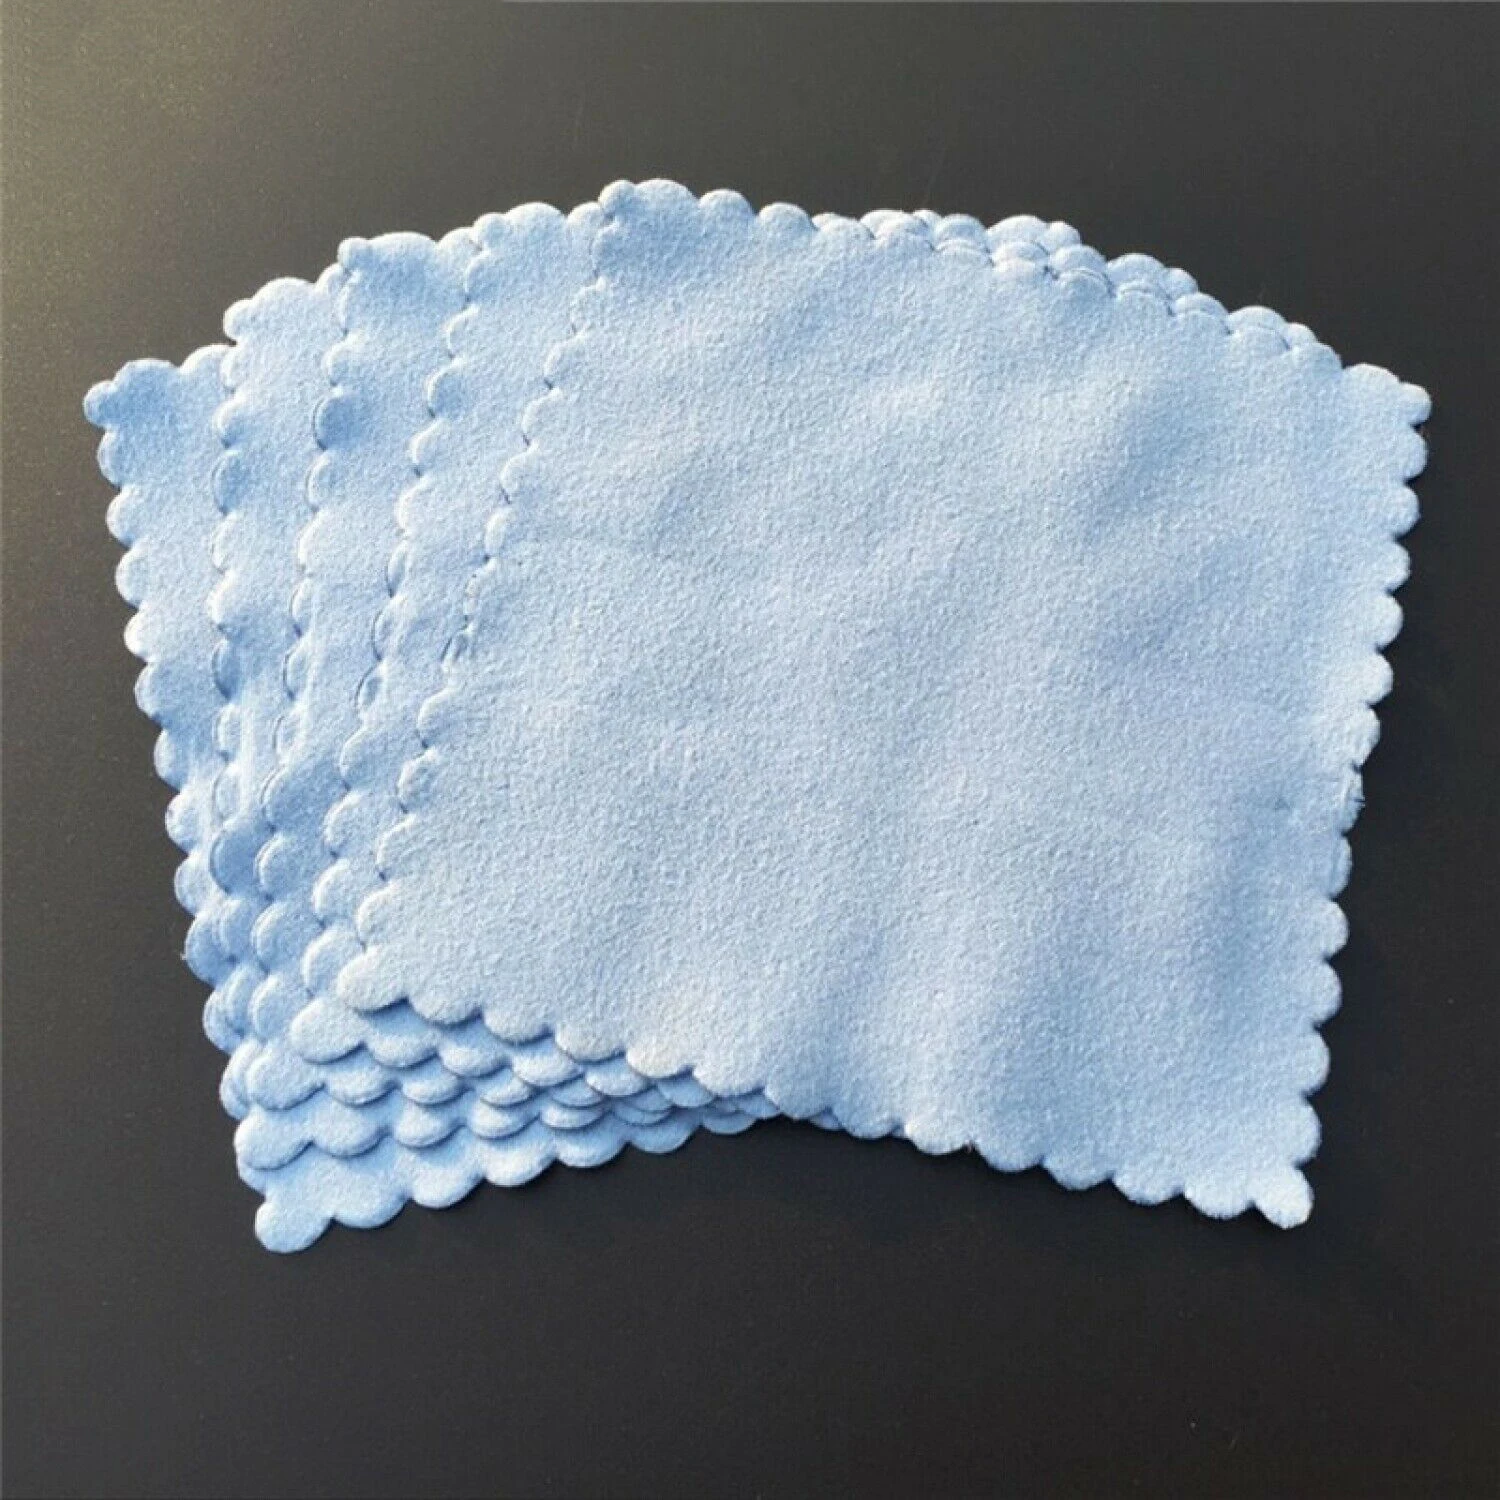 20 шт салфетки из микрофибры для чистки нано керамических покрытий автомобиля, автомобильные стеклянные покрытые безворсовые салфетки 10*10 см синие